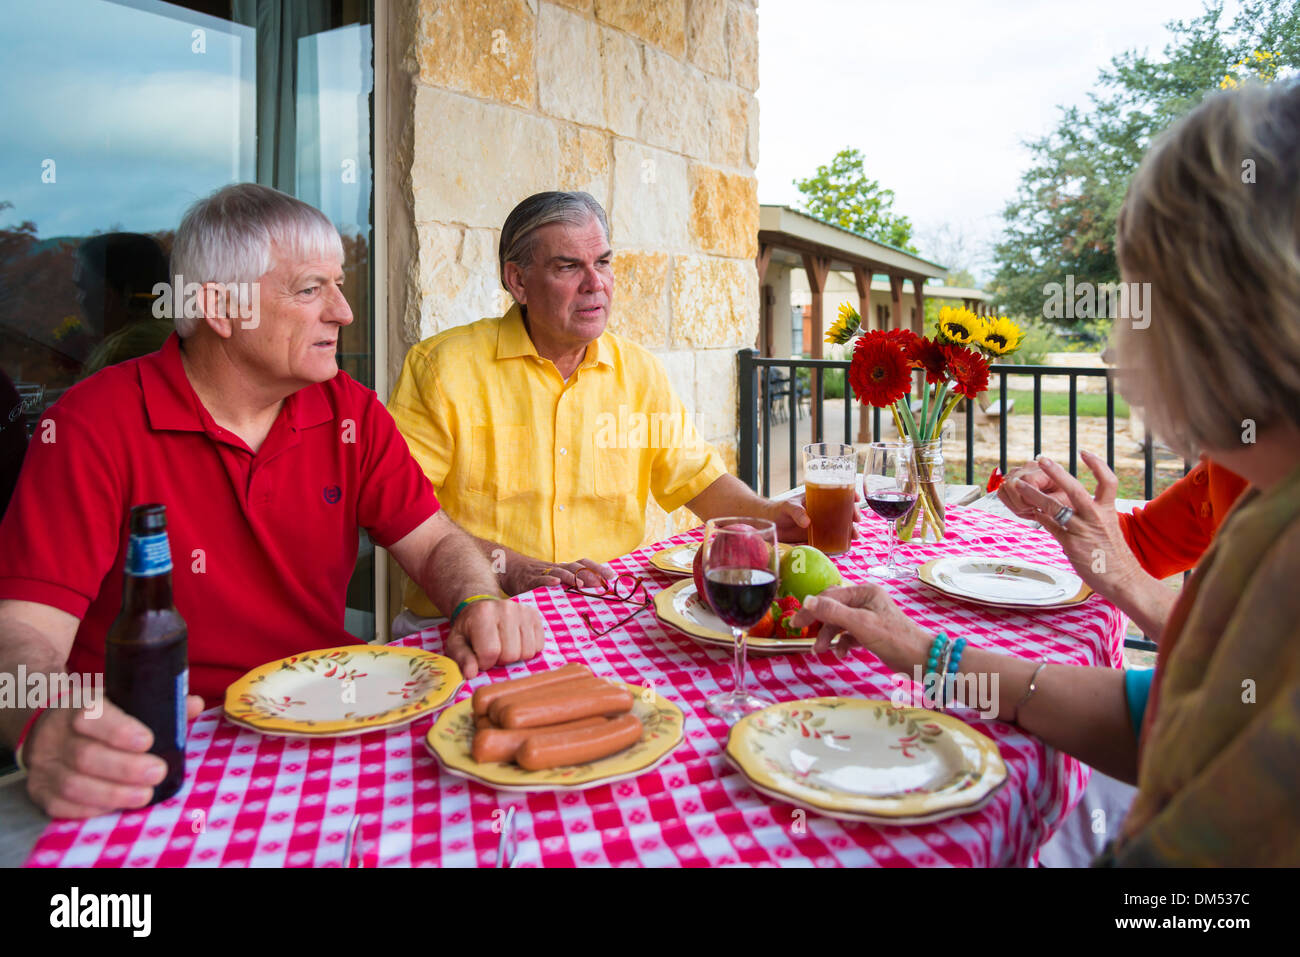 Zwei Paare im Ruhestand an einem Hinterhof Grill-party. Essen und trinken, wie frisches Obst, Wurst, Bier und Wein auf dem Tisch. Stockfoto